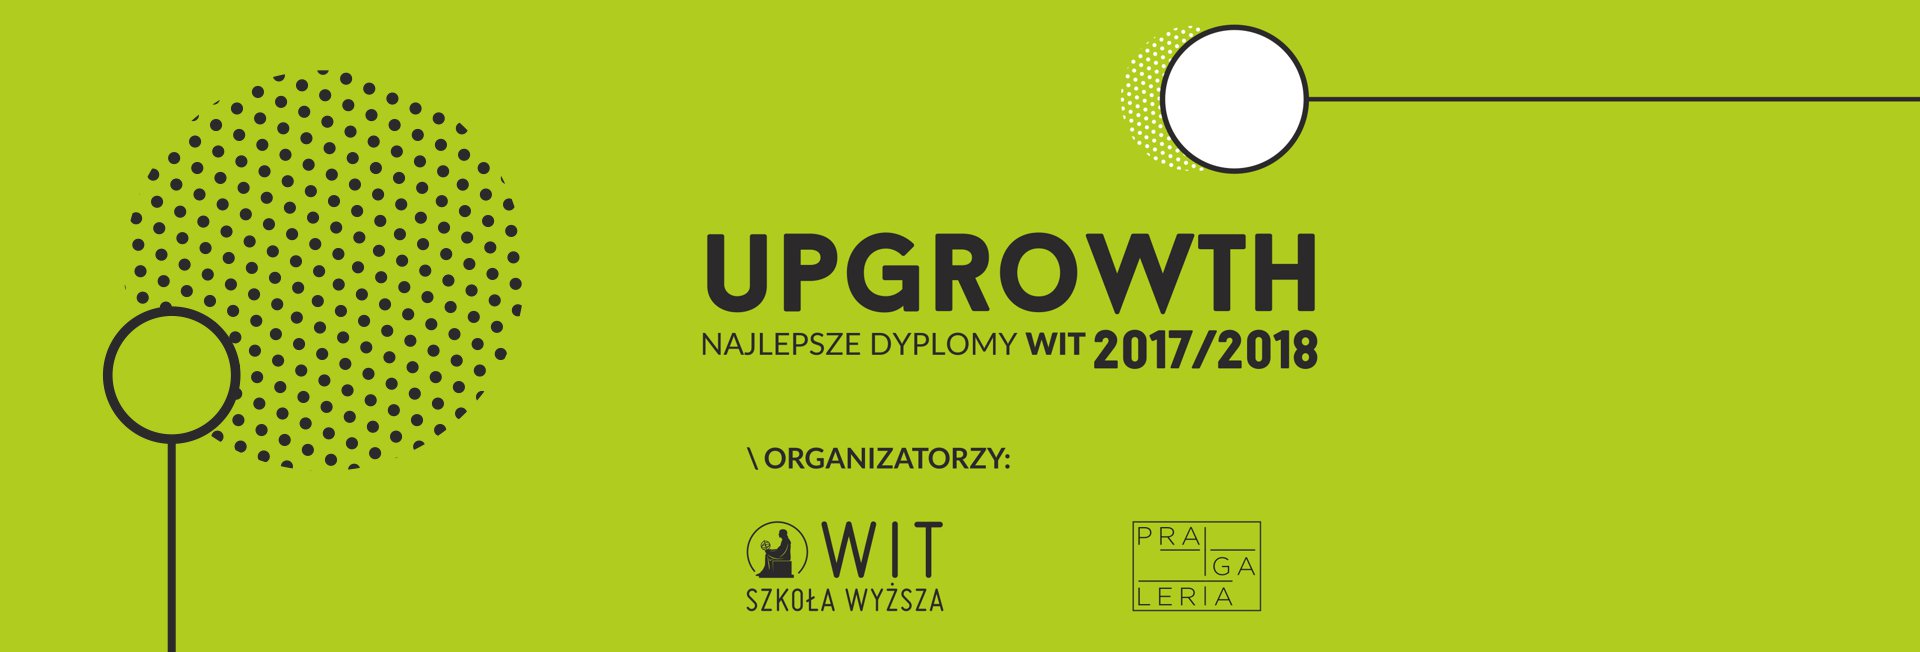 Wystawa UPGROWTH 2017/2018 najlepsze dyplomy WIT